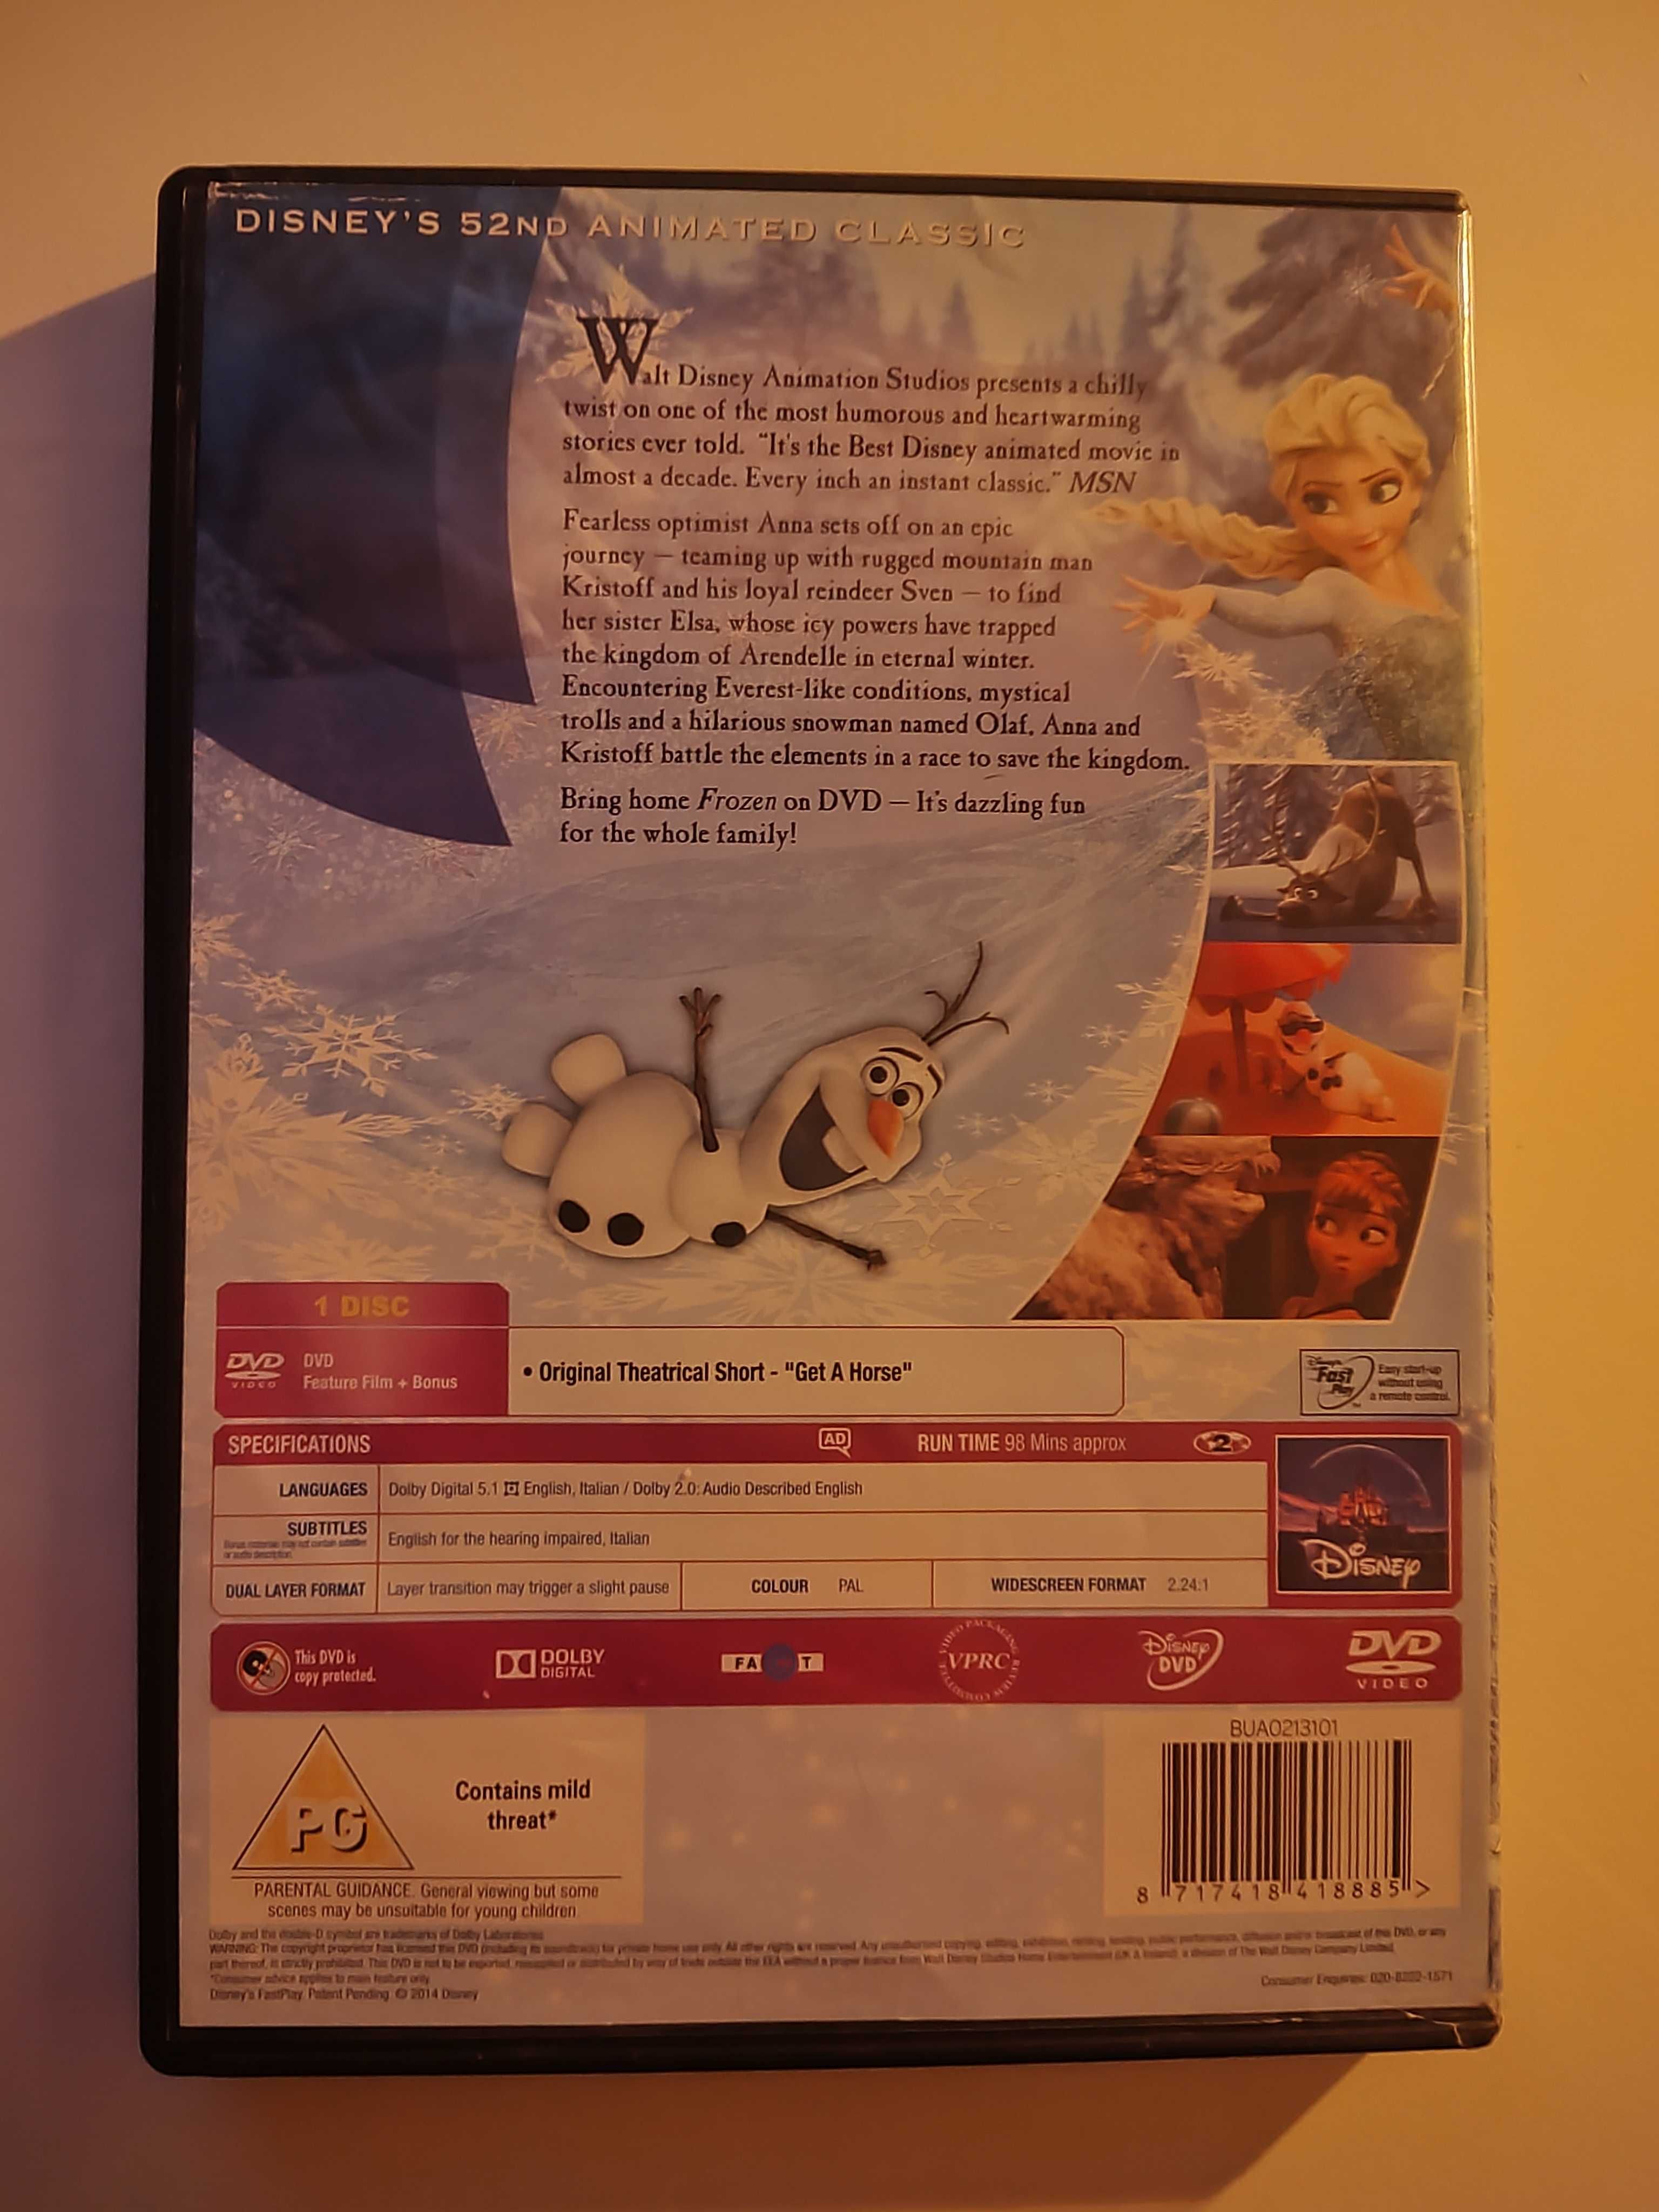 Film Frozen ENG DVD